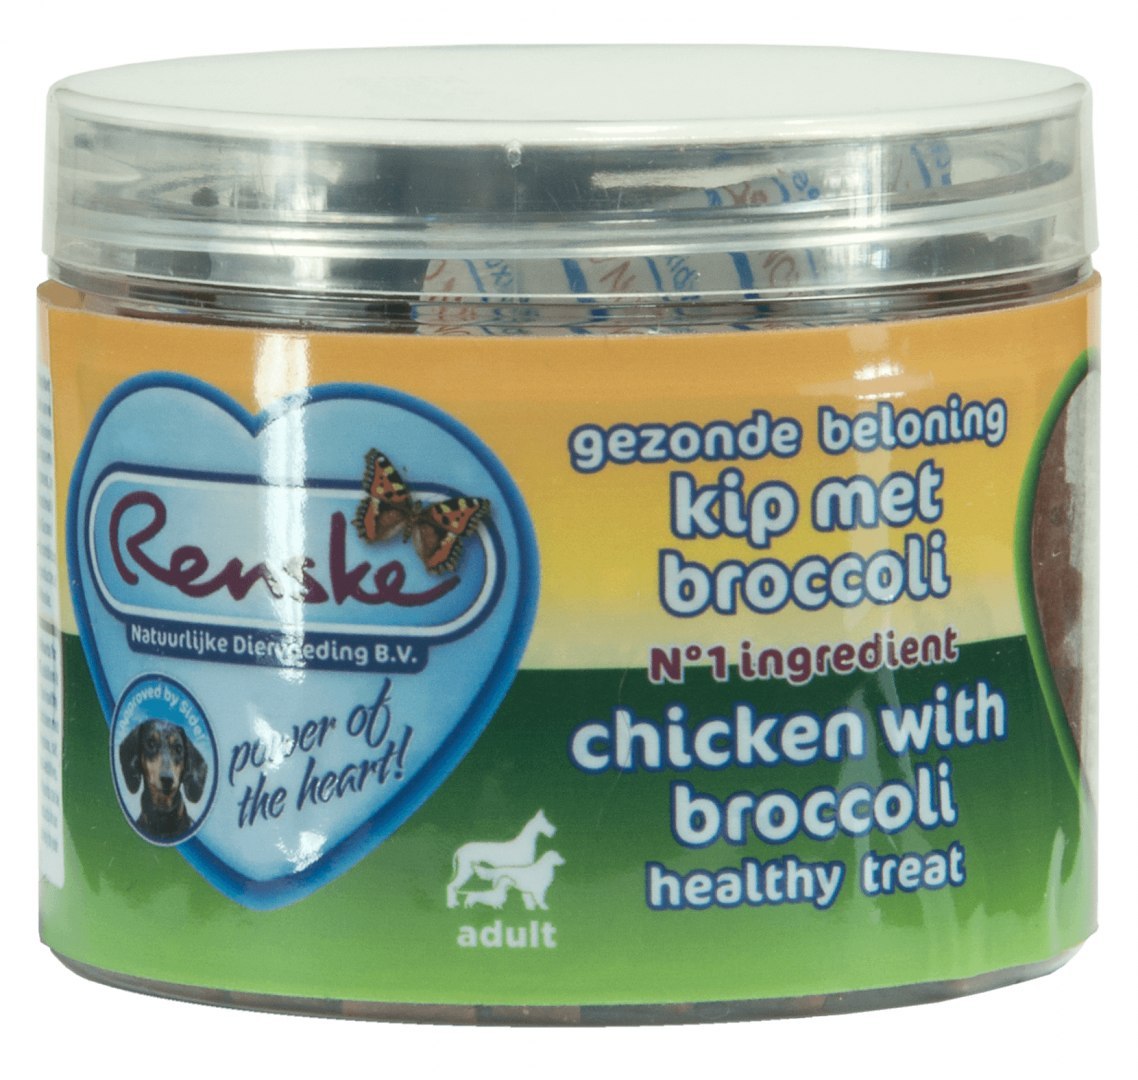 Renske Dog Healthy Mini Treat Chicken with broccoli - zdrowy mini przysmak dla psów małych ras - kurczak z brokułami 100 g